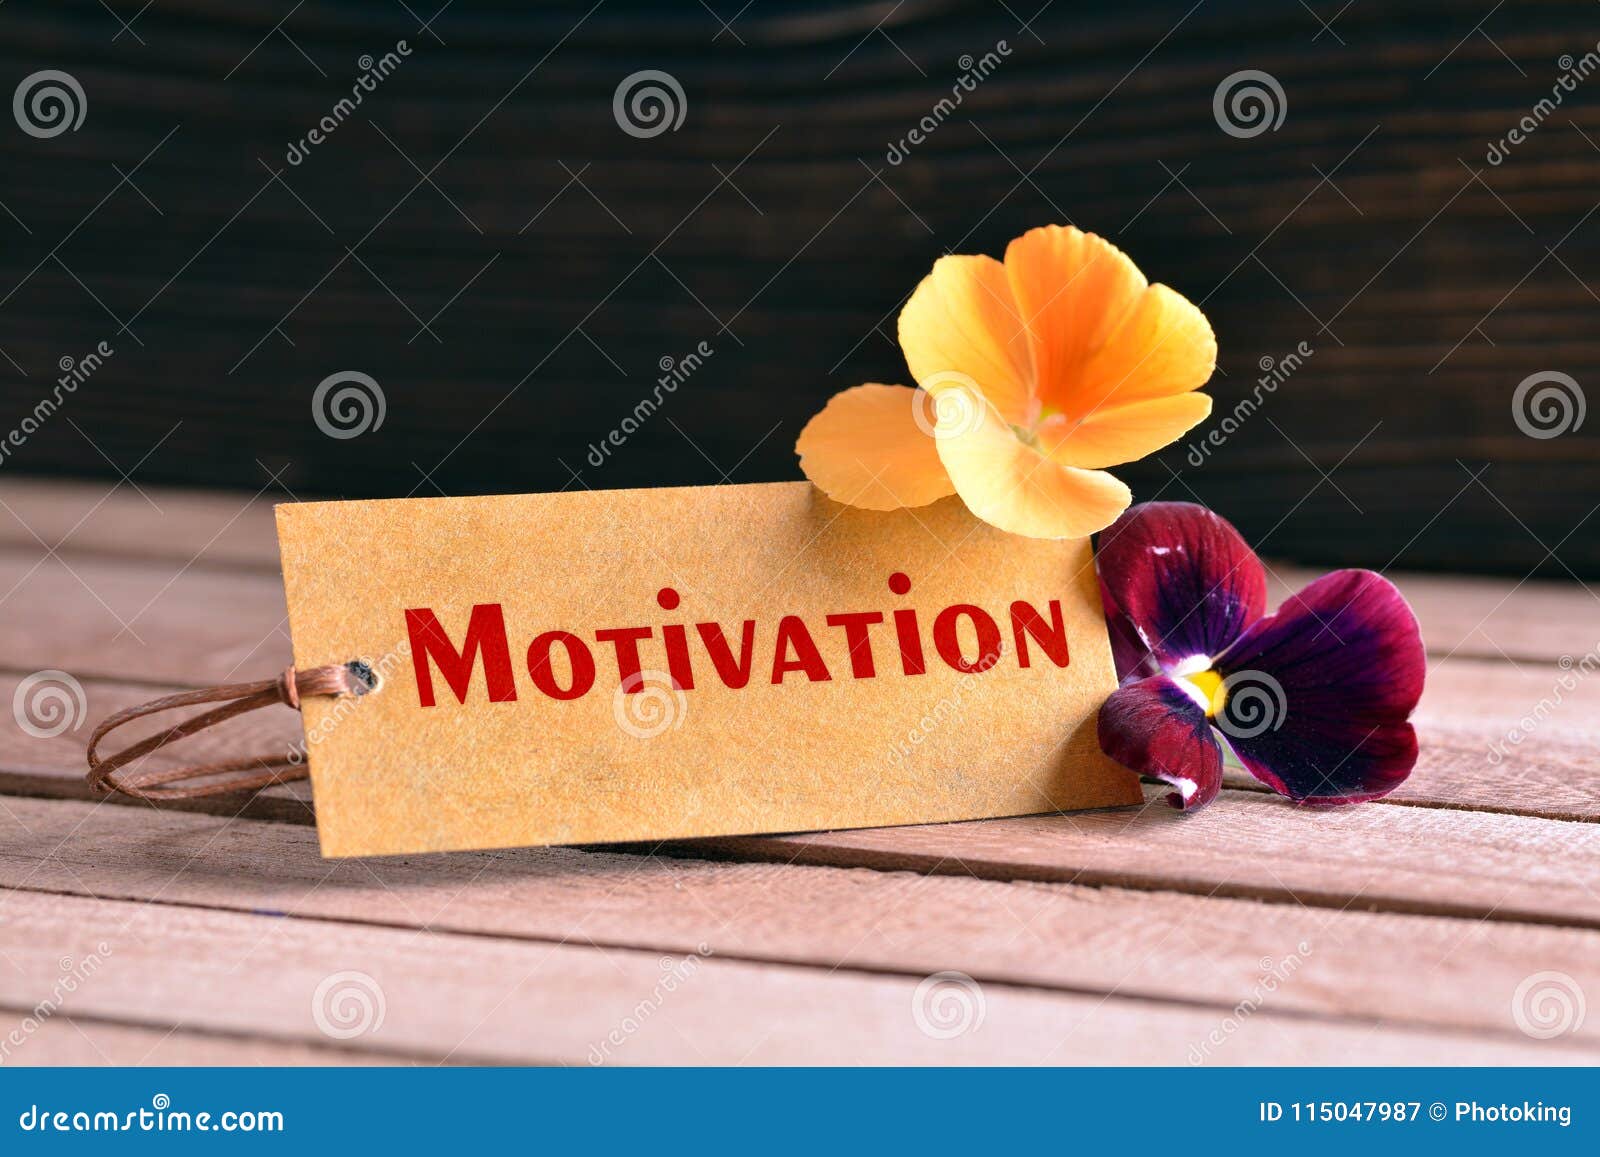 motivation tag